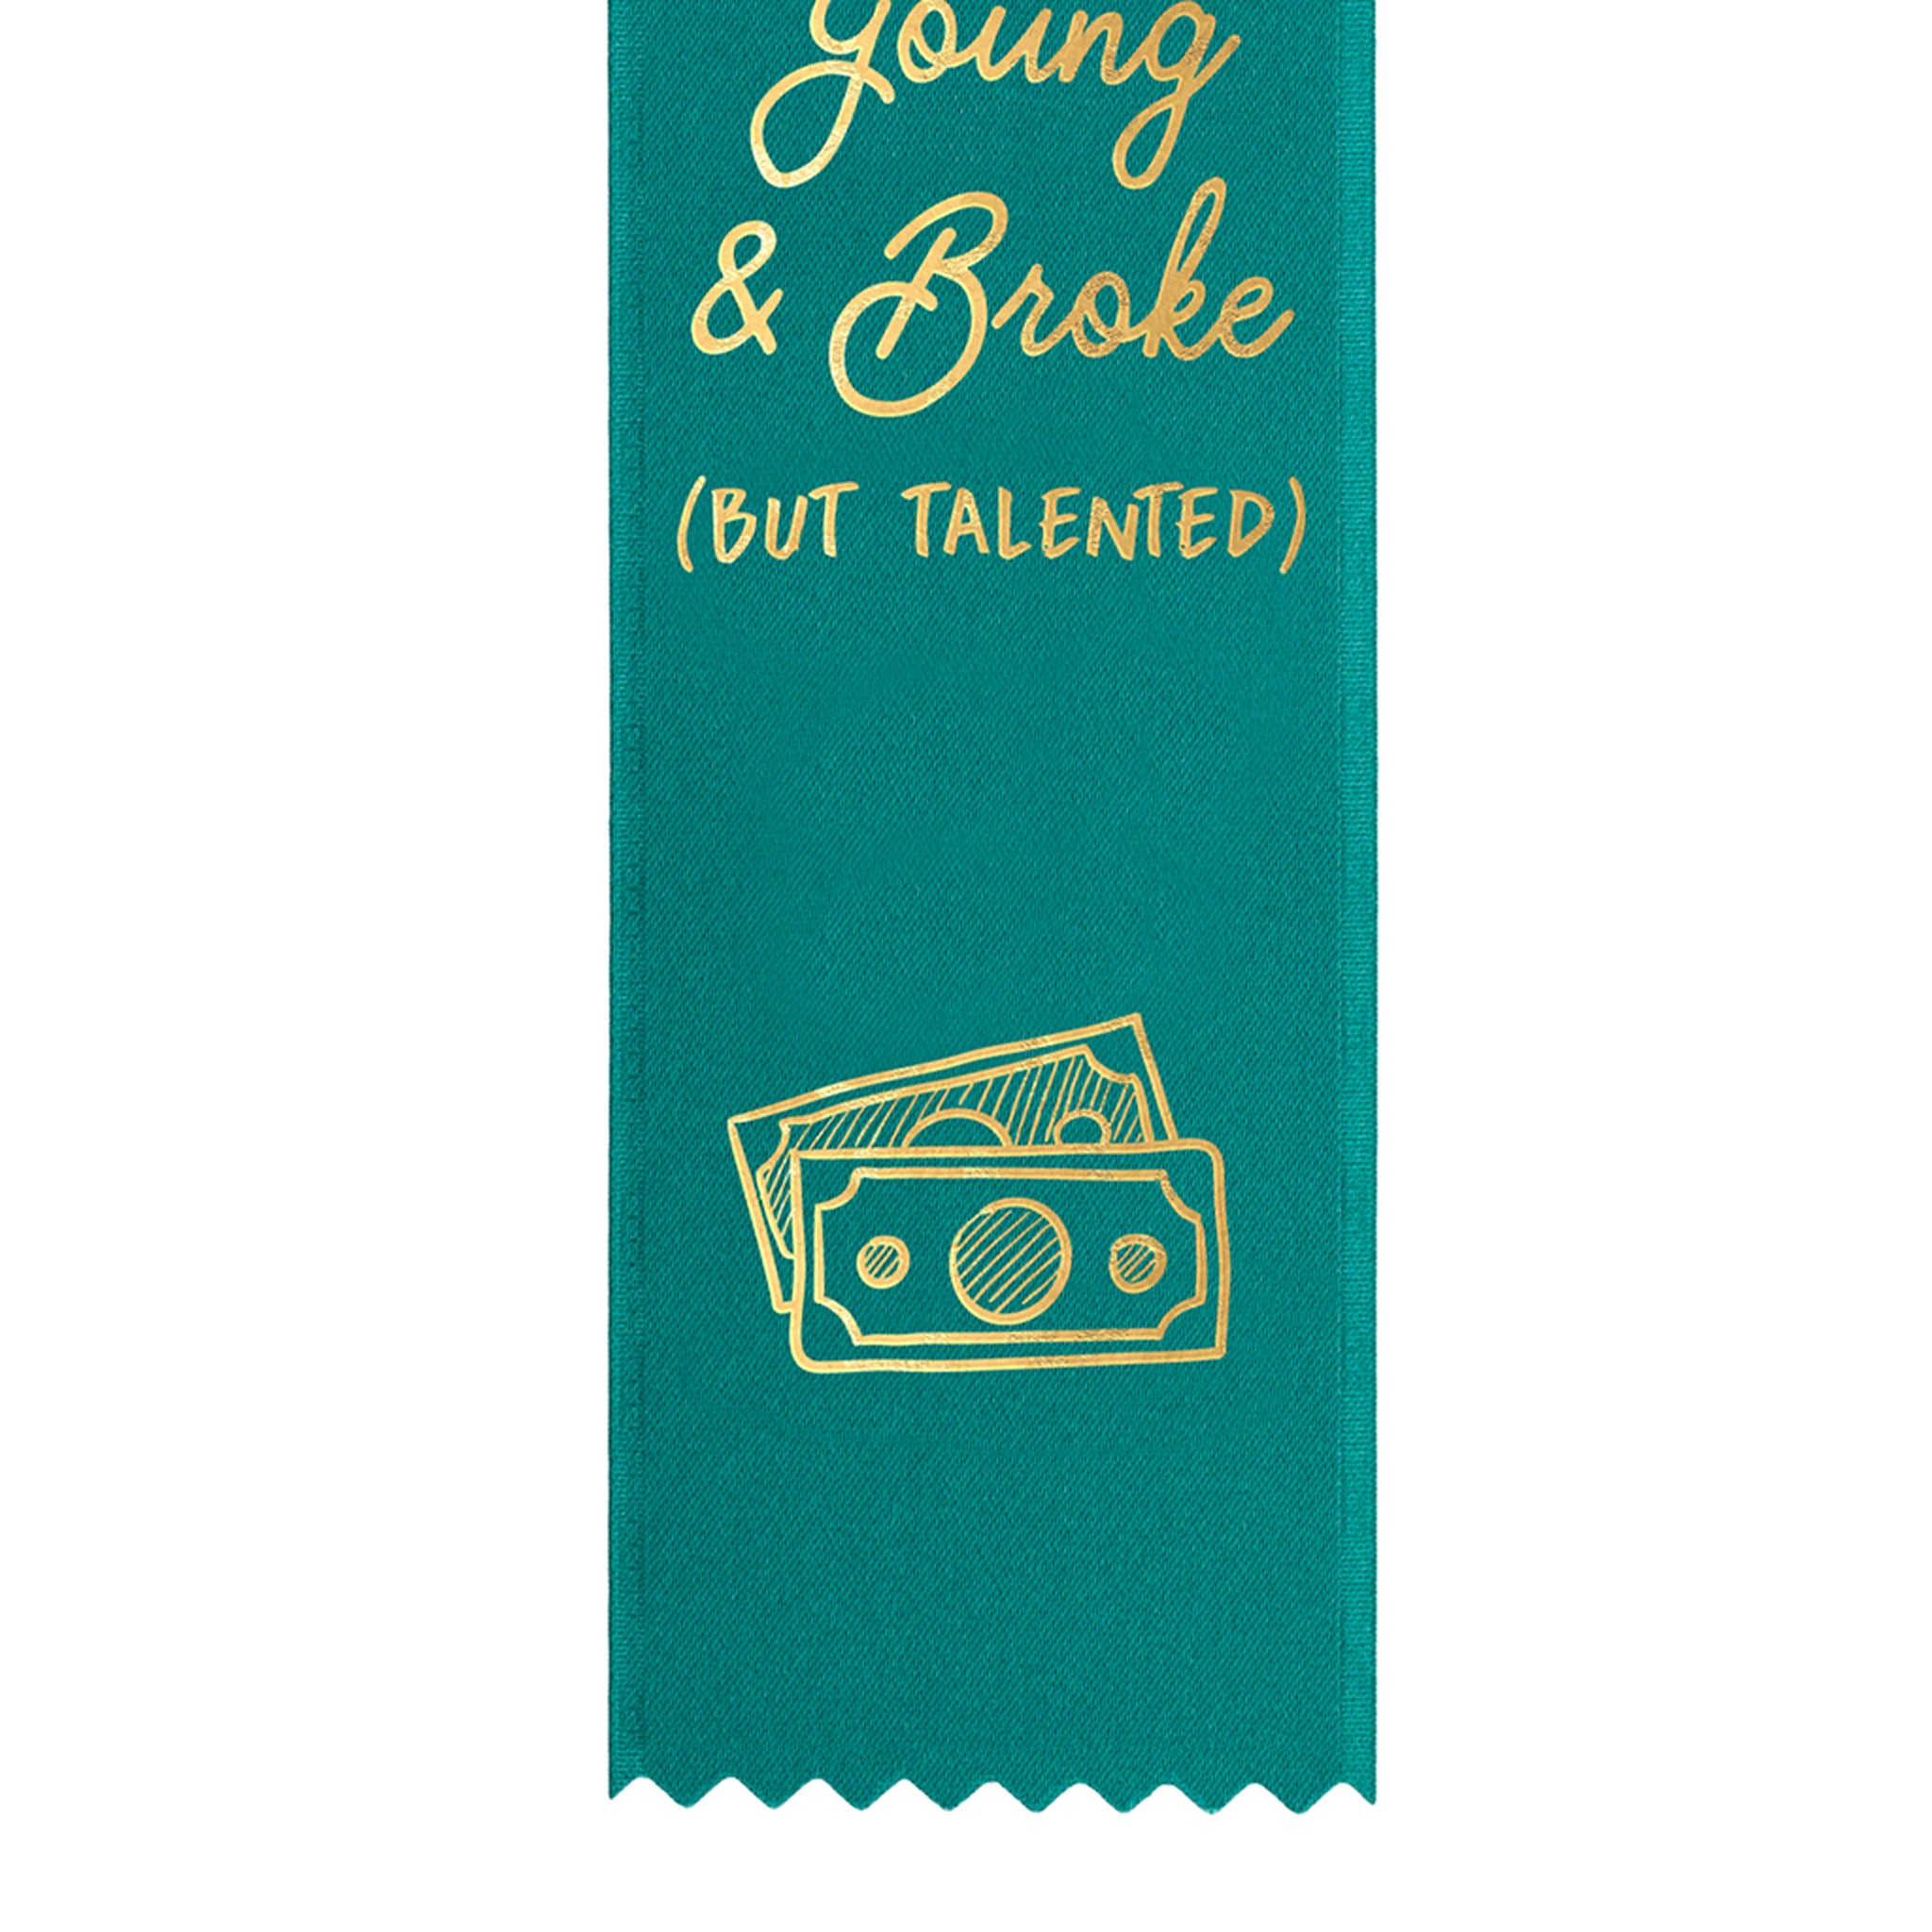 Young & Broke, but Talented Award Ribbon